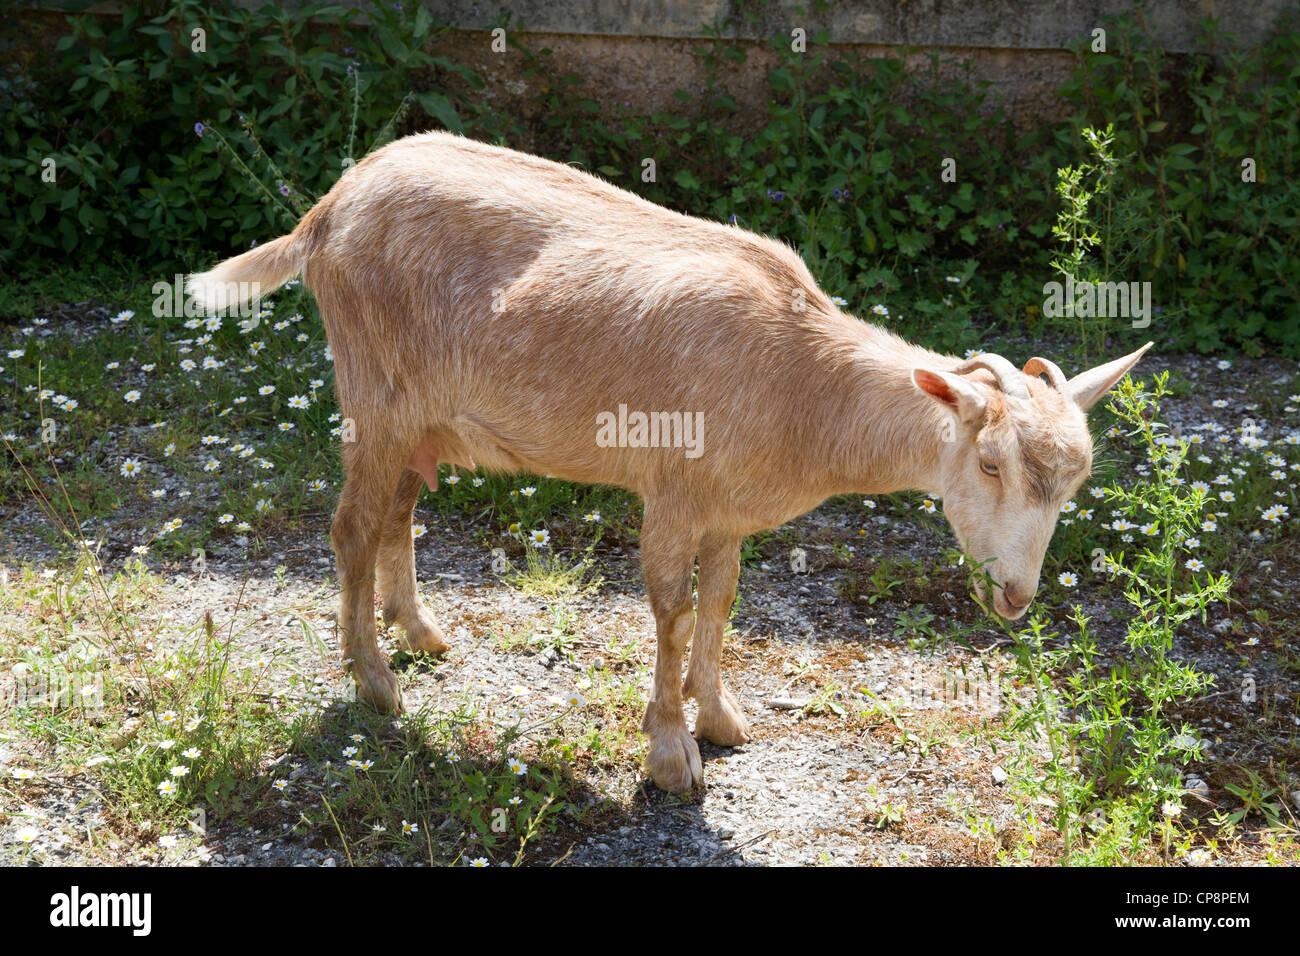 Nanny goat Majorca Mallorca Spain Stock Photo